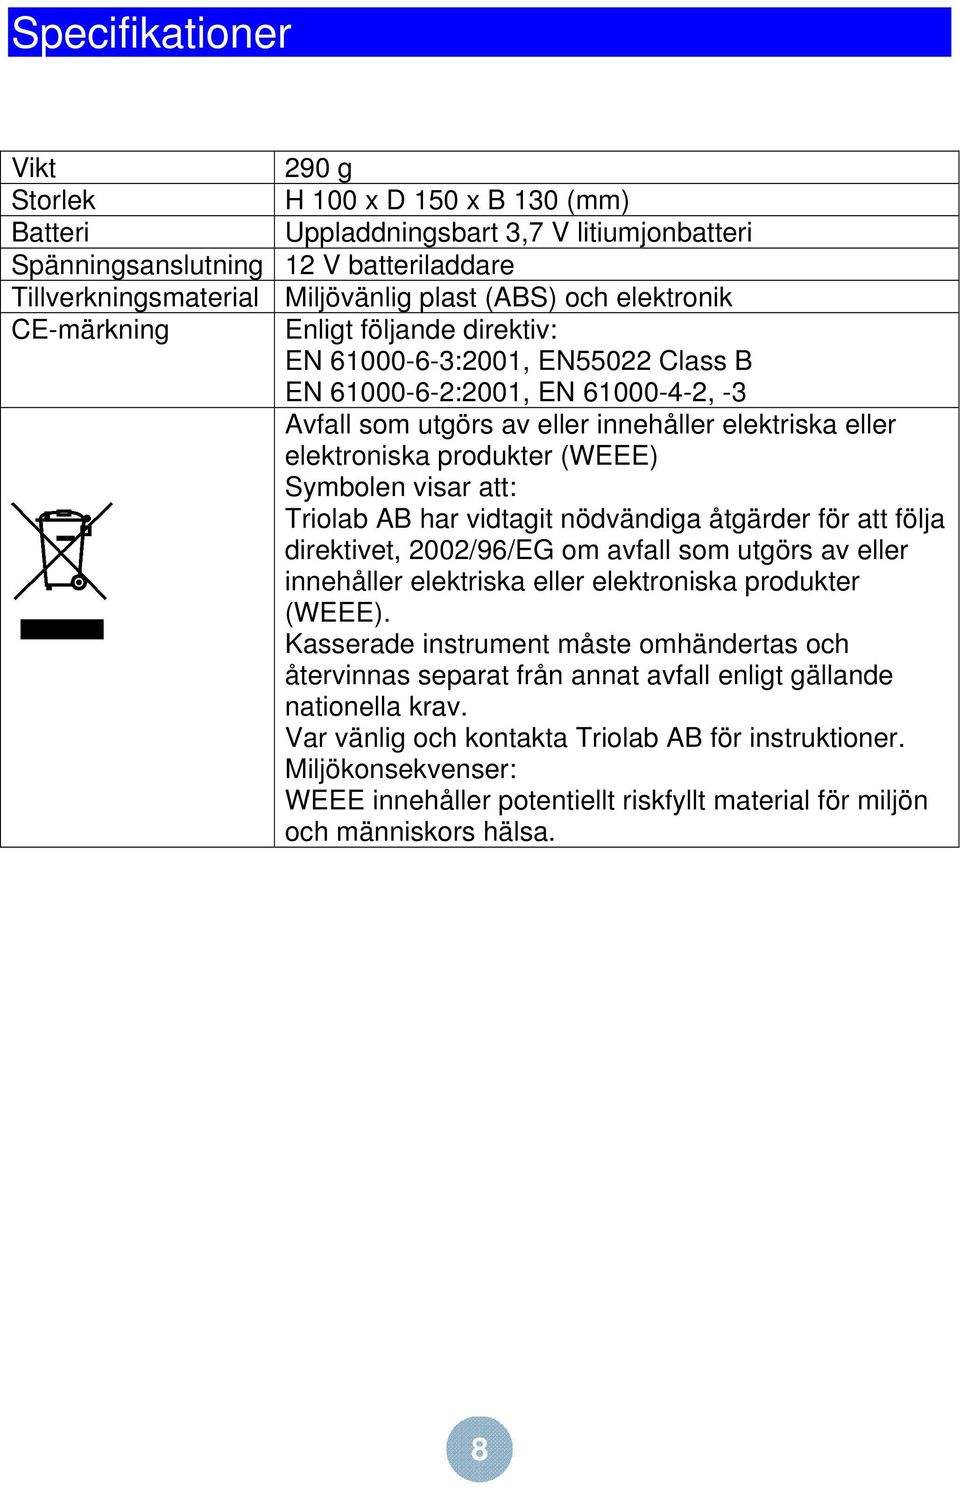 (WEEE) Symbolen visar att: Triolab AB har vidtagit nödvändiga åtgärder för att följa direktivet, 2002/96/EG om avfall som utgörs av eller innehåller elektriska eller elektroniska produkter (WEEE).